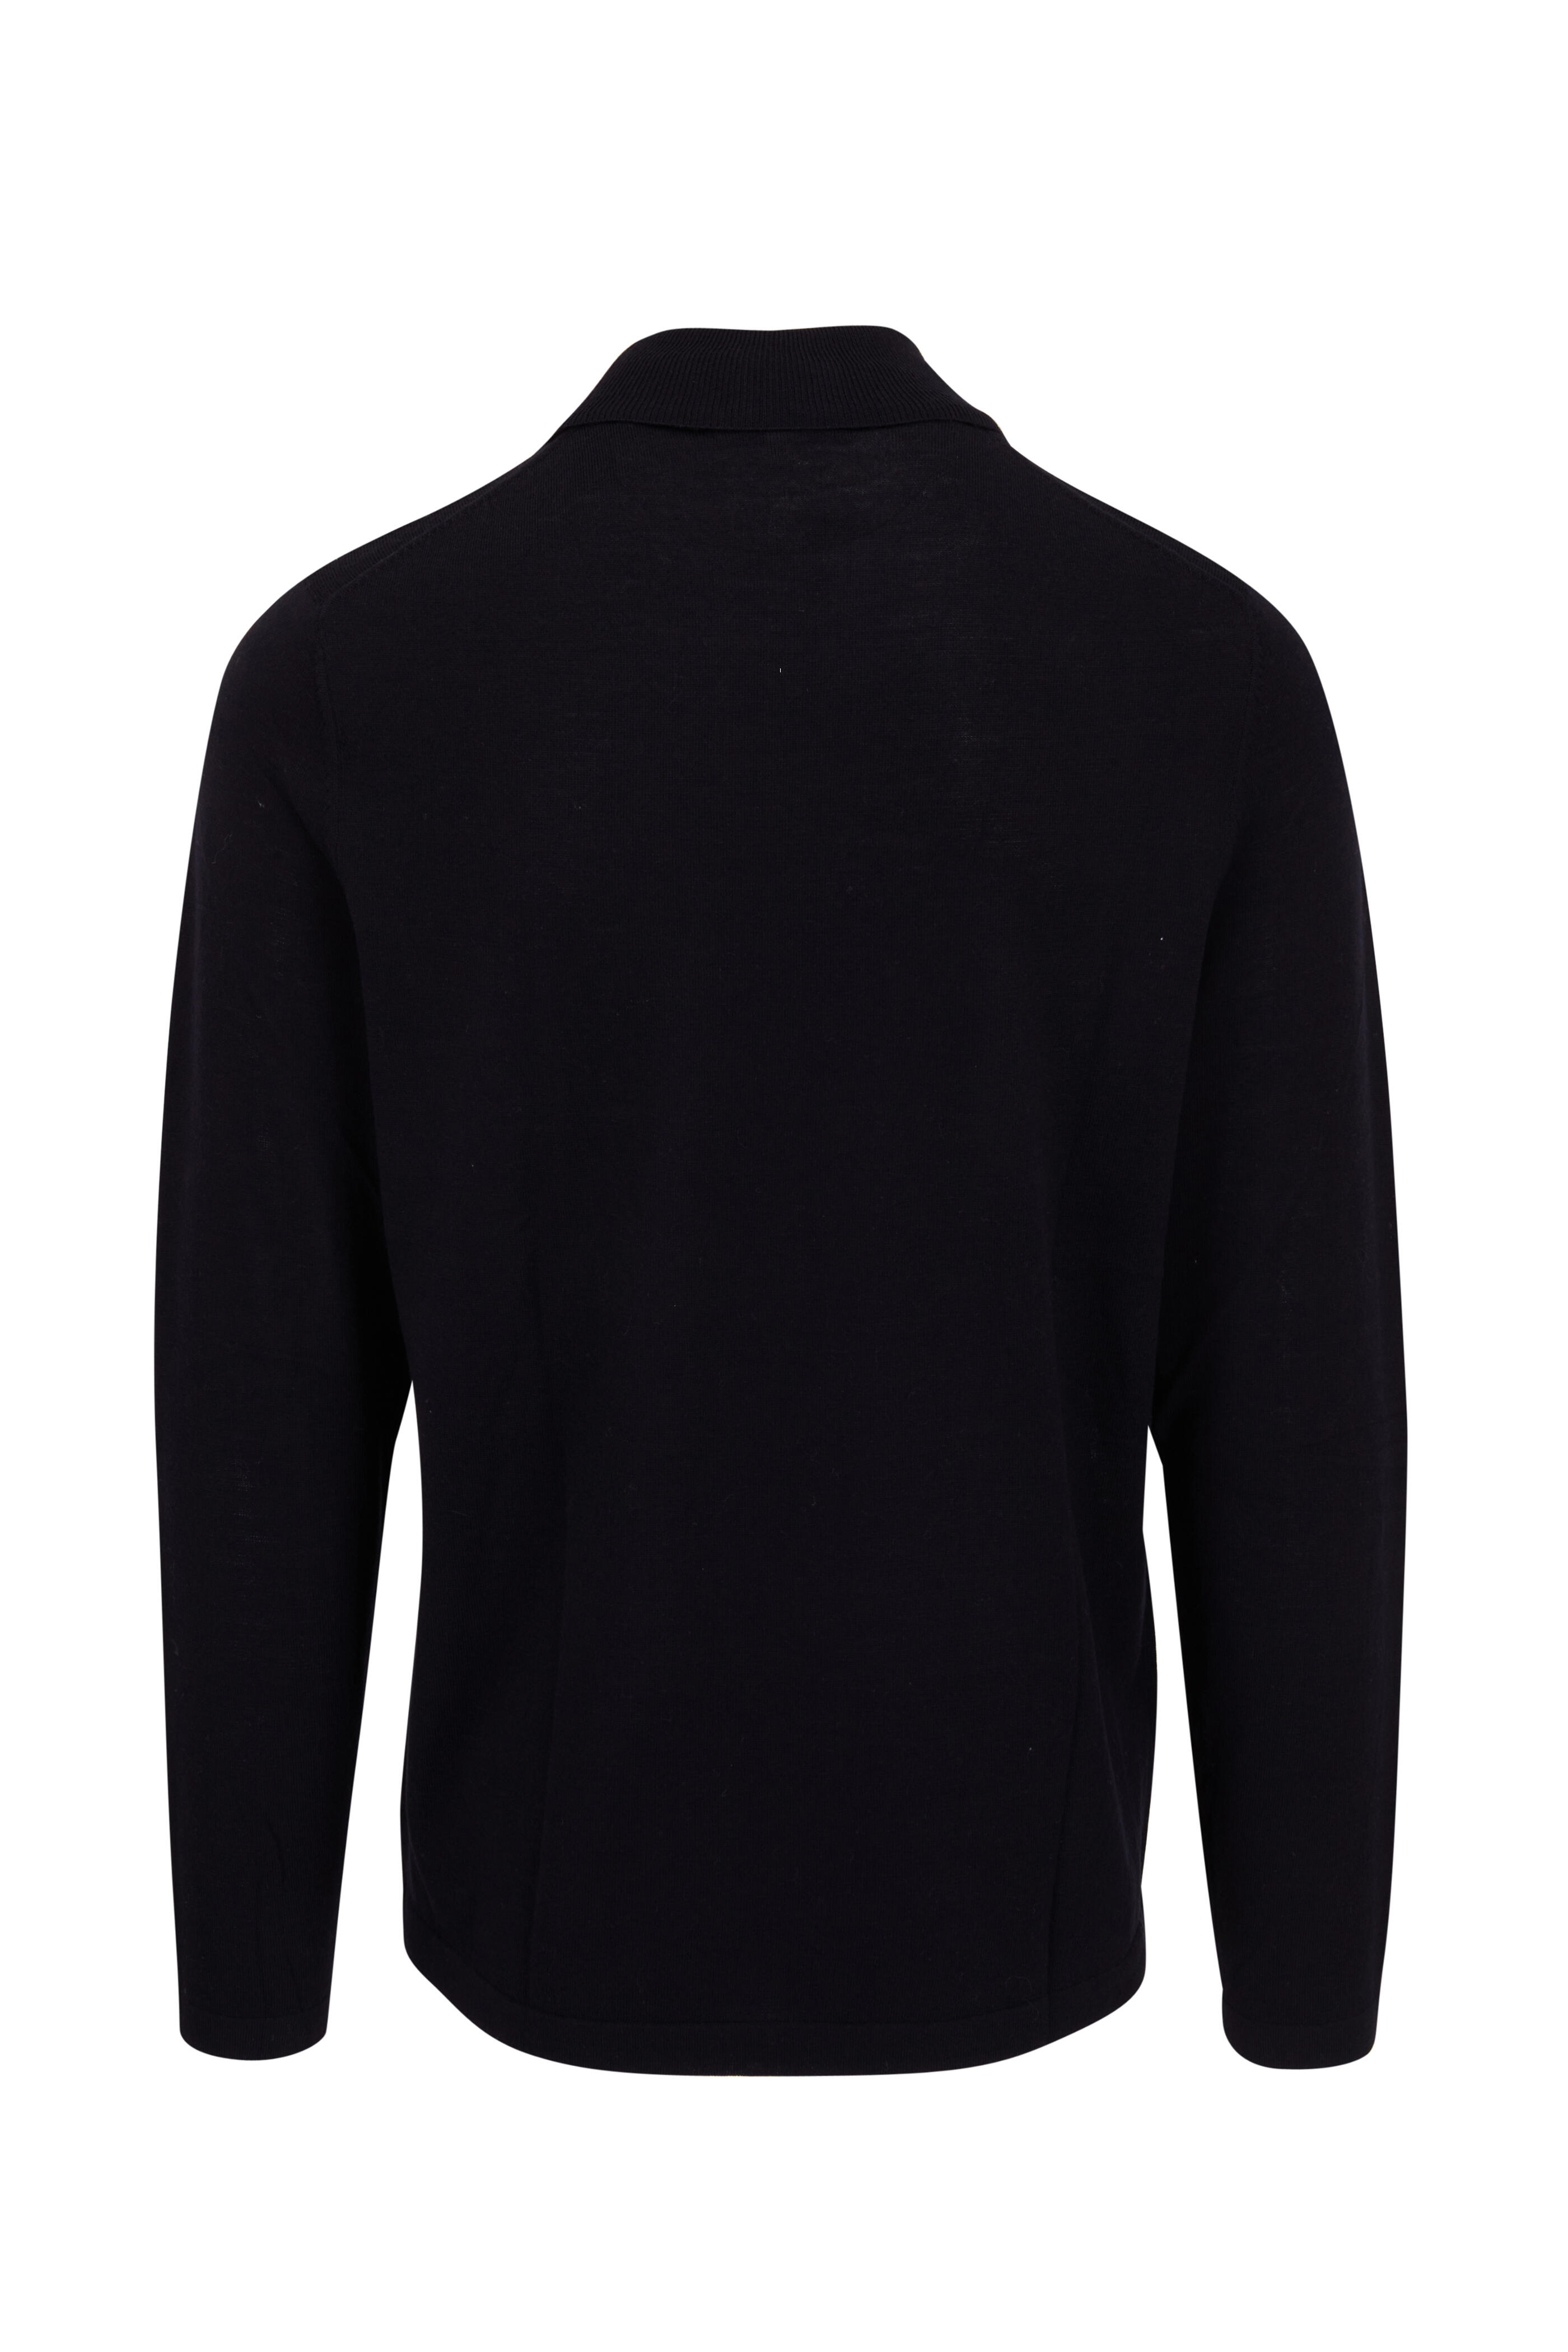 Long Sleeve Henley Shirt - PATRICK ASSARAF